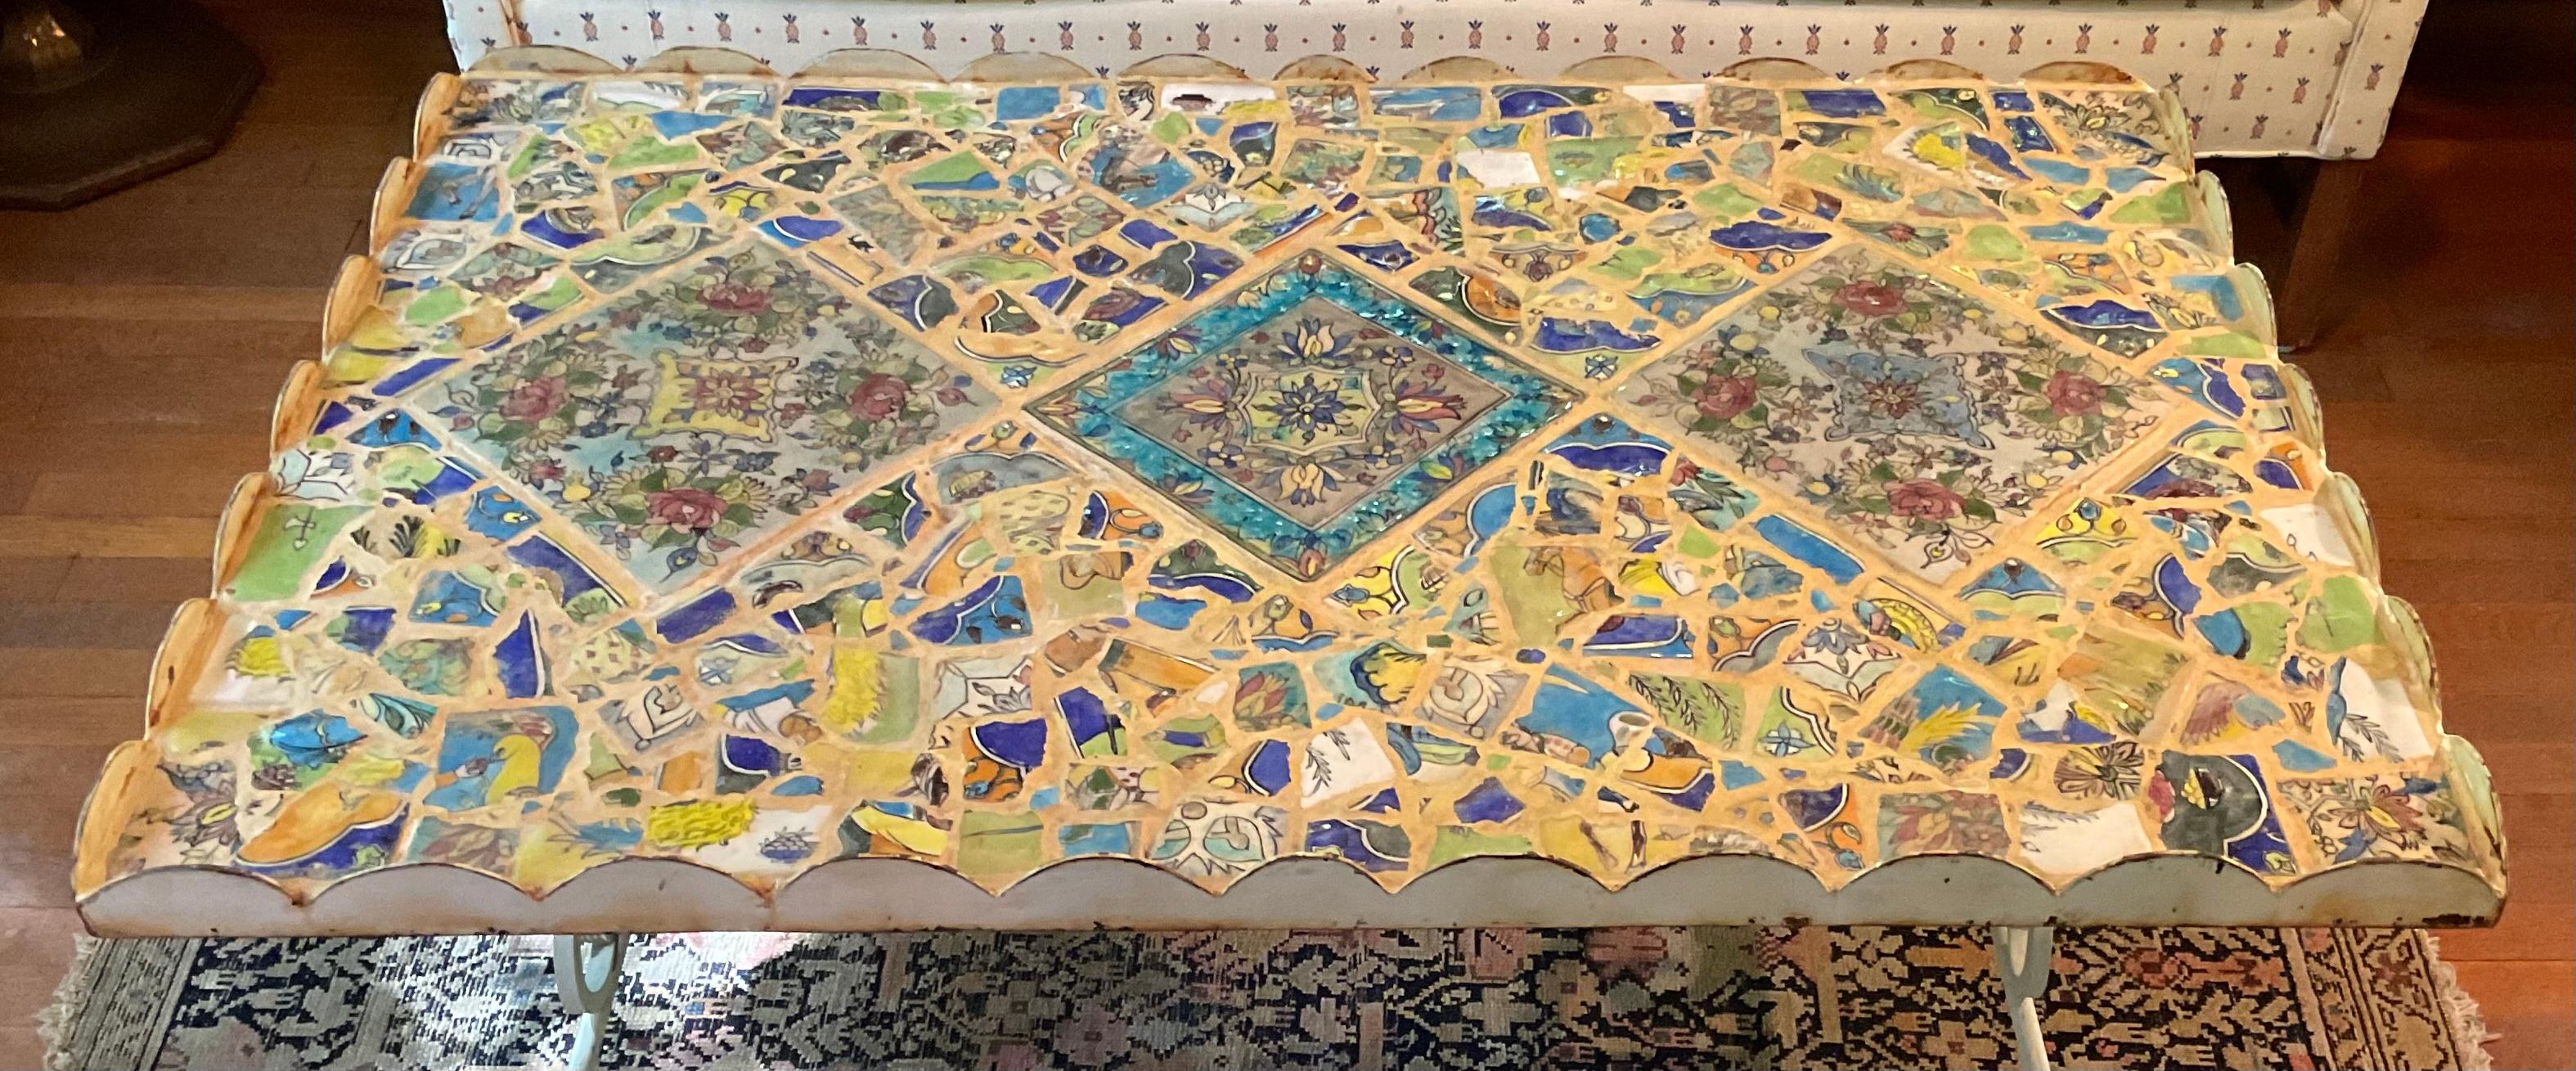 Exceptionnelle table basse en fer, trois beaux carreaux persans peints à la main 
entouré d'une belle mosaïque de carreaux persans brisés. Le cadre supérieur en acier décoré rend la table très fonctionnelle 
Le dessus de la table en carreaux est